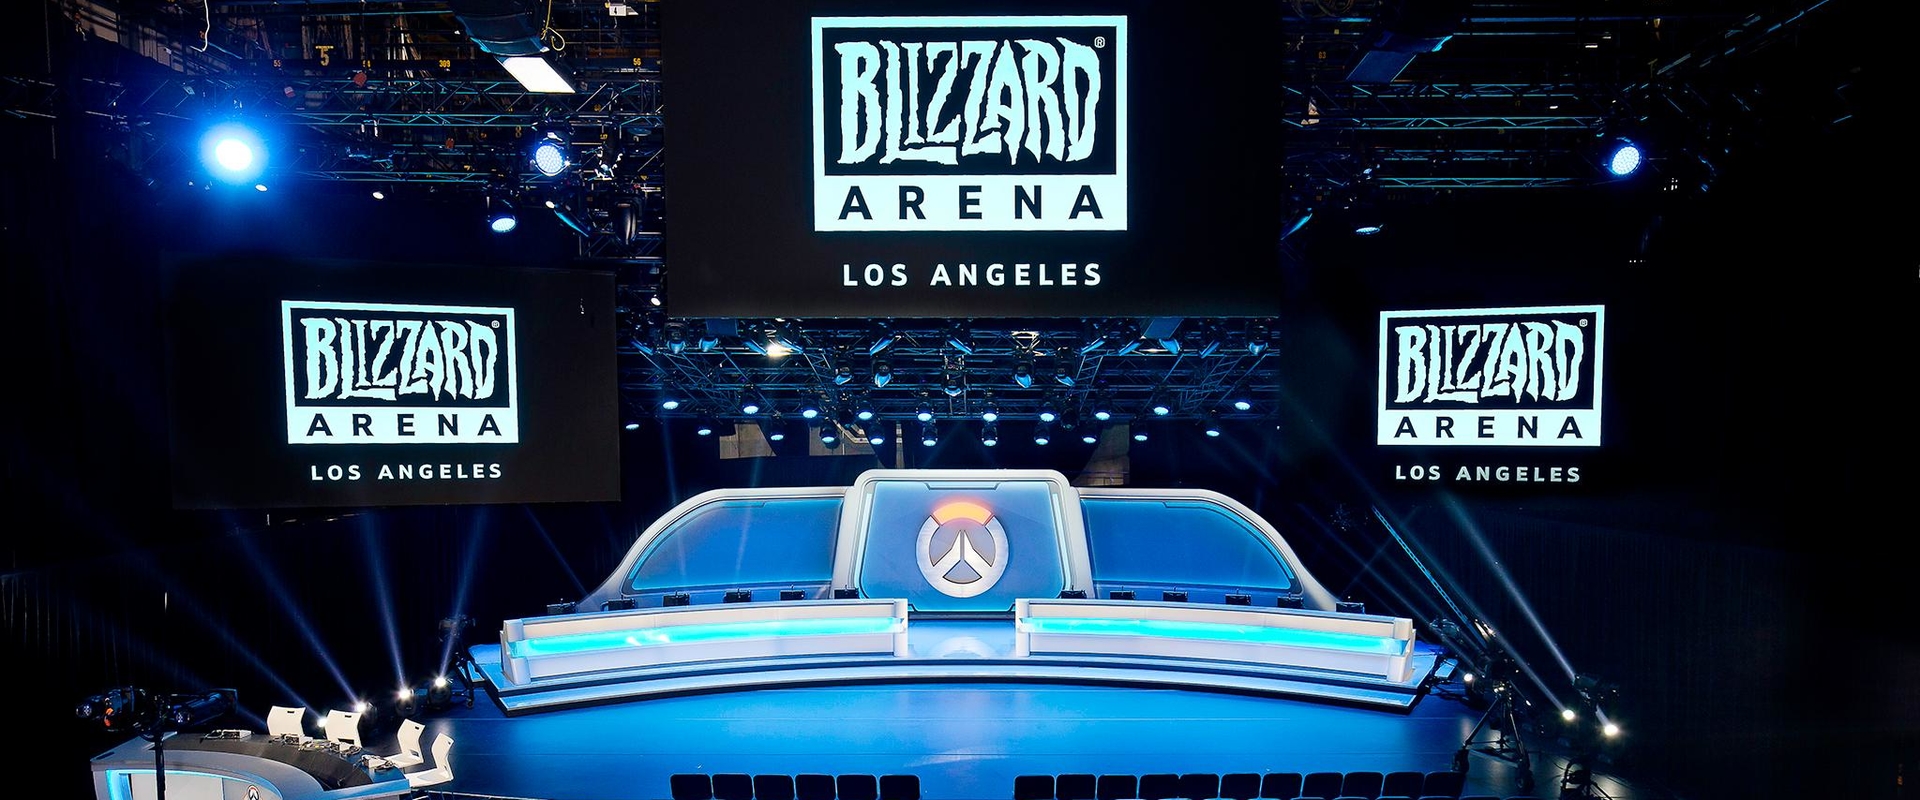 Így néz ki a Blizzard e-sport arénája!